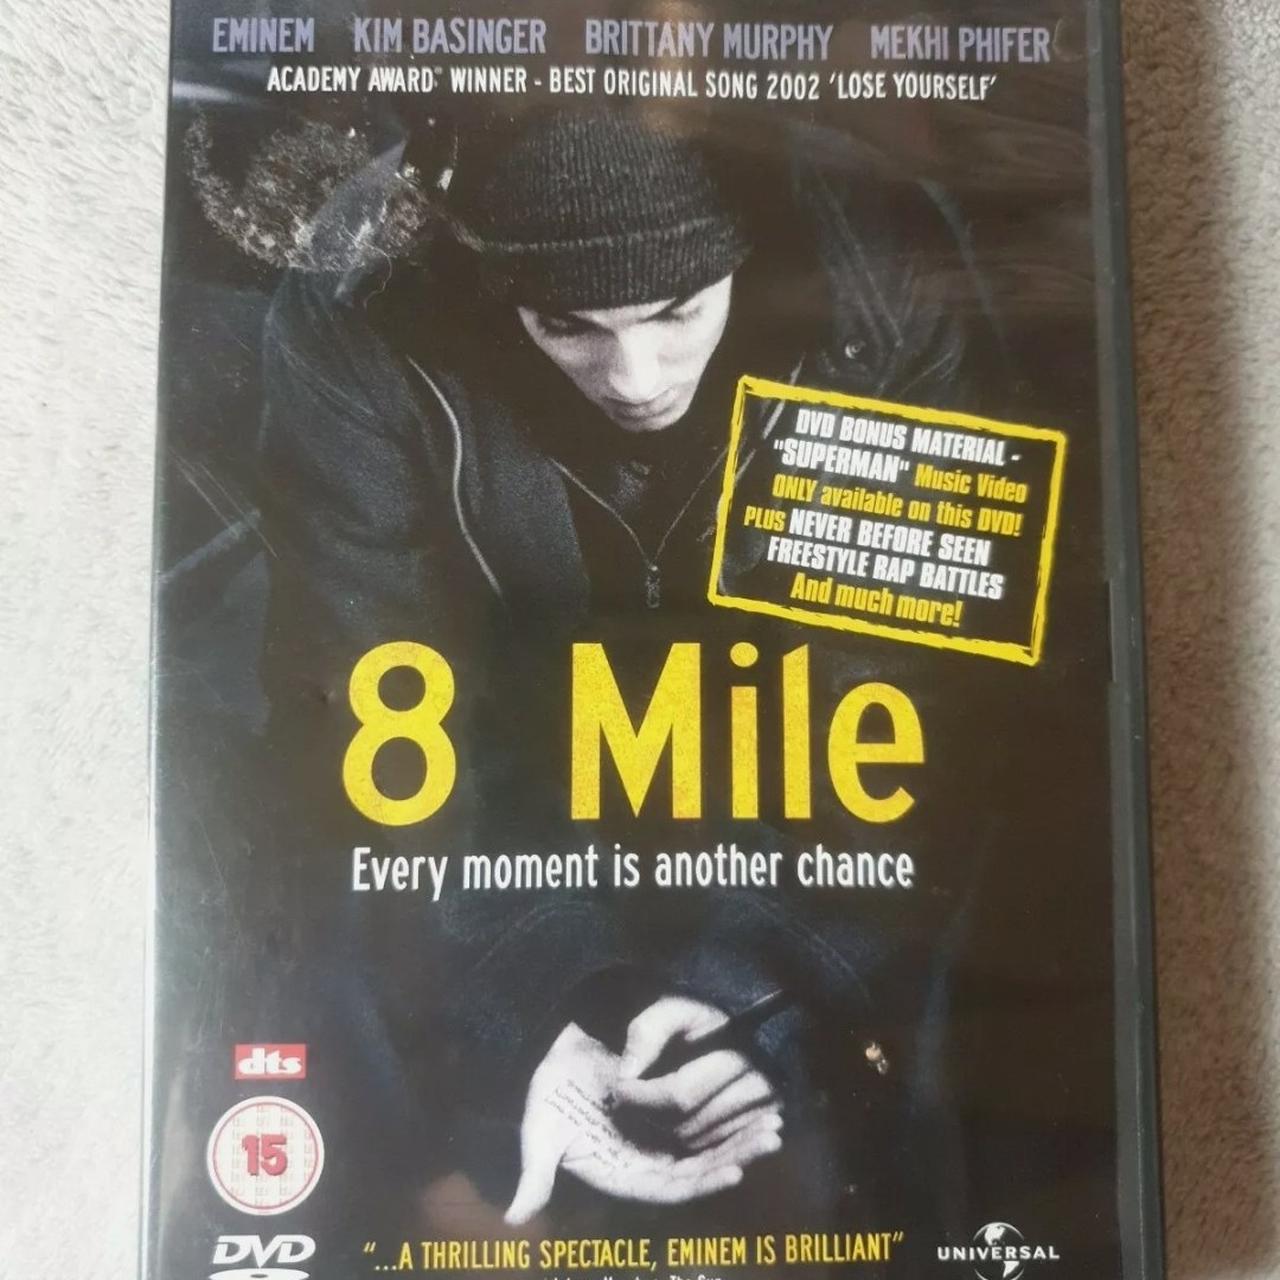 Mile　Depop　(DVD,　Rap　Eminem　2010)　star　strong...　makes　a